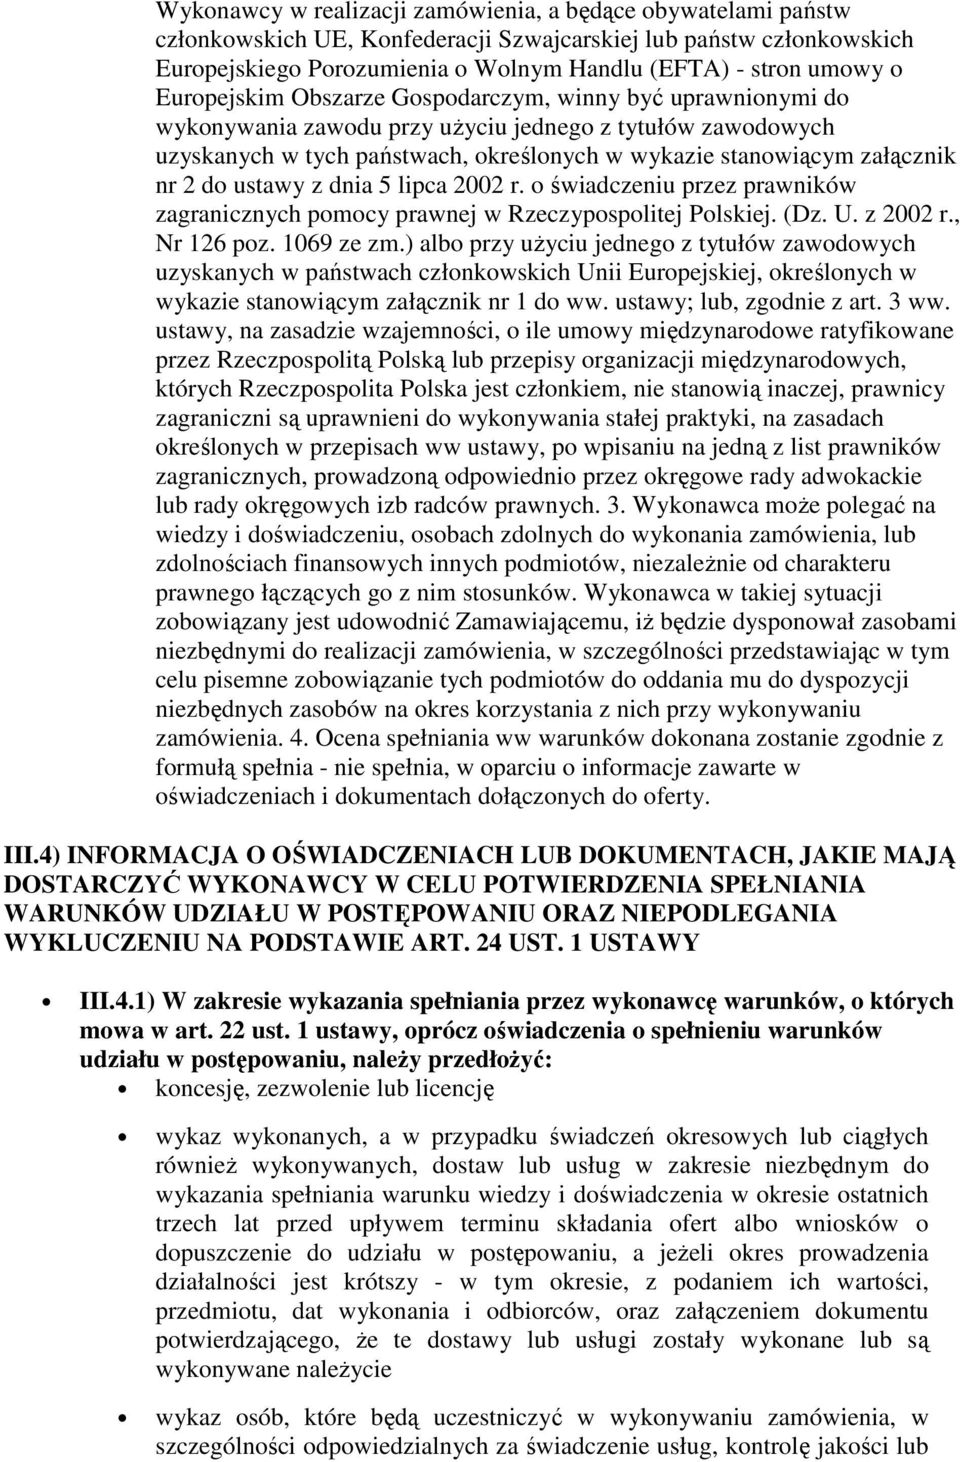 do ustawy z dnia 5 lipca 2002 r. o świadczeniu przez prawników zagranicznych pomocy prawnej w Rzeczypospolitej Polskiej. (Dz. U. z 2002 r., Nr 126 poz. 1069 ze zm.